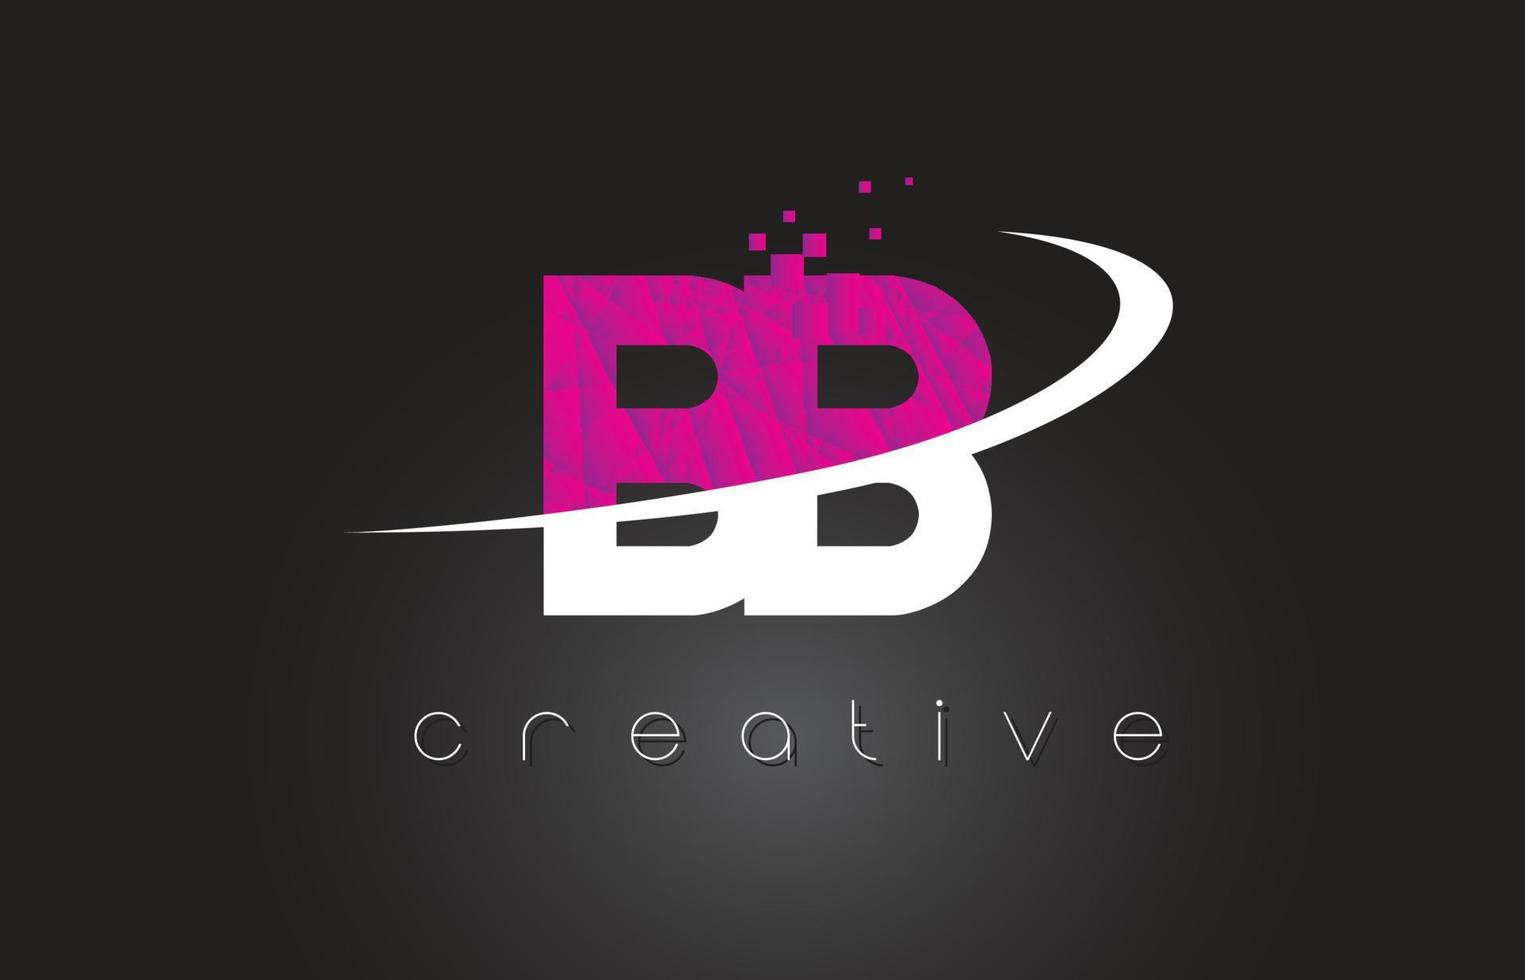 bb bb design de letras criativas com cores rosa branco vetor